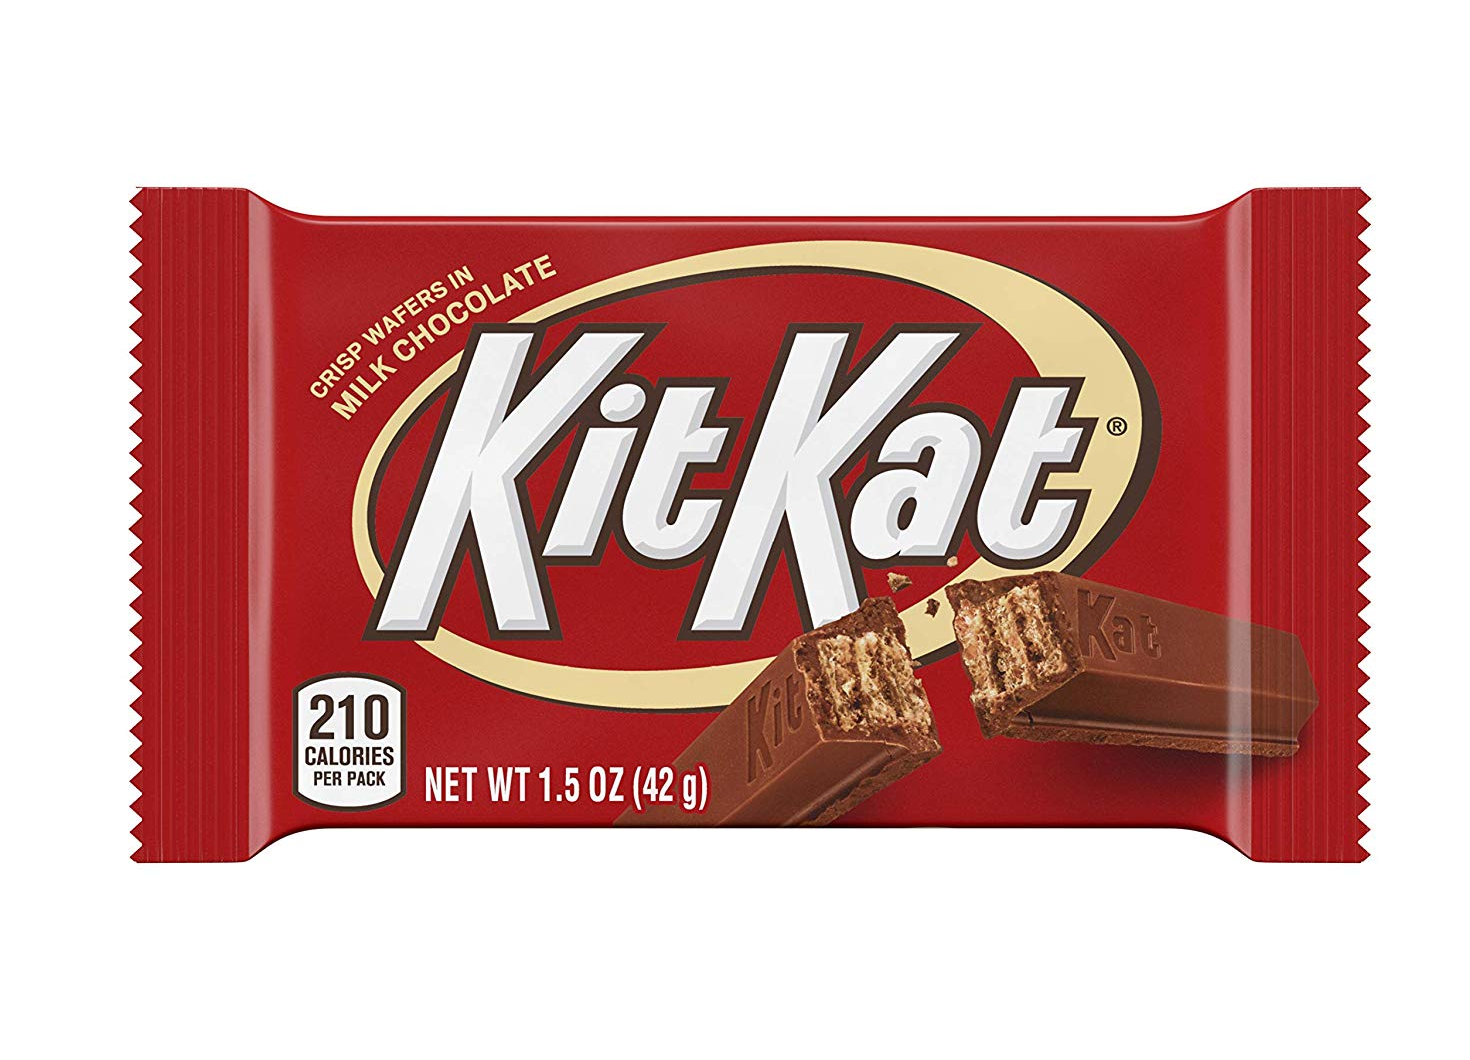 Аналог китката. КИТКАТ. Kitkat фабрики. I__Kit_kat__i. GOODMIX это КИТКАТ.